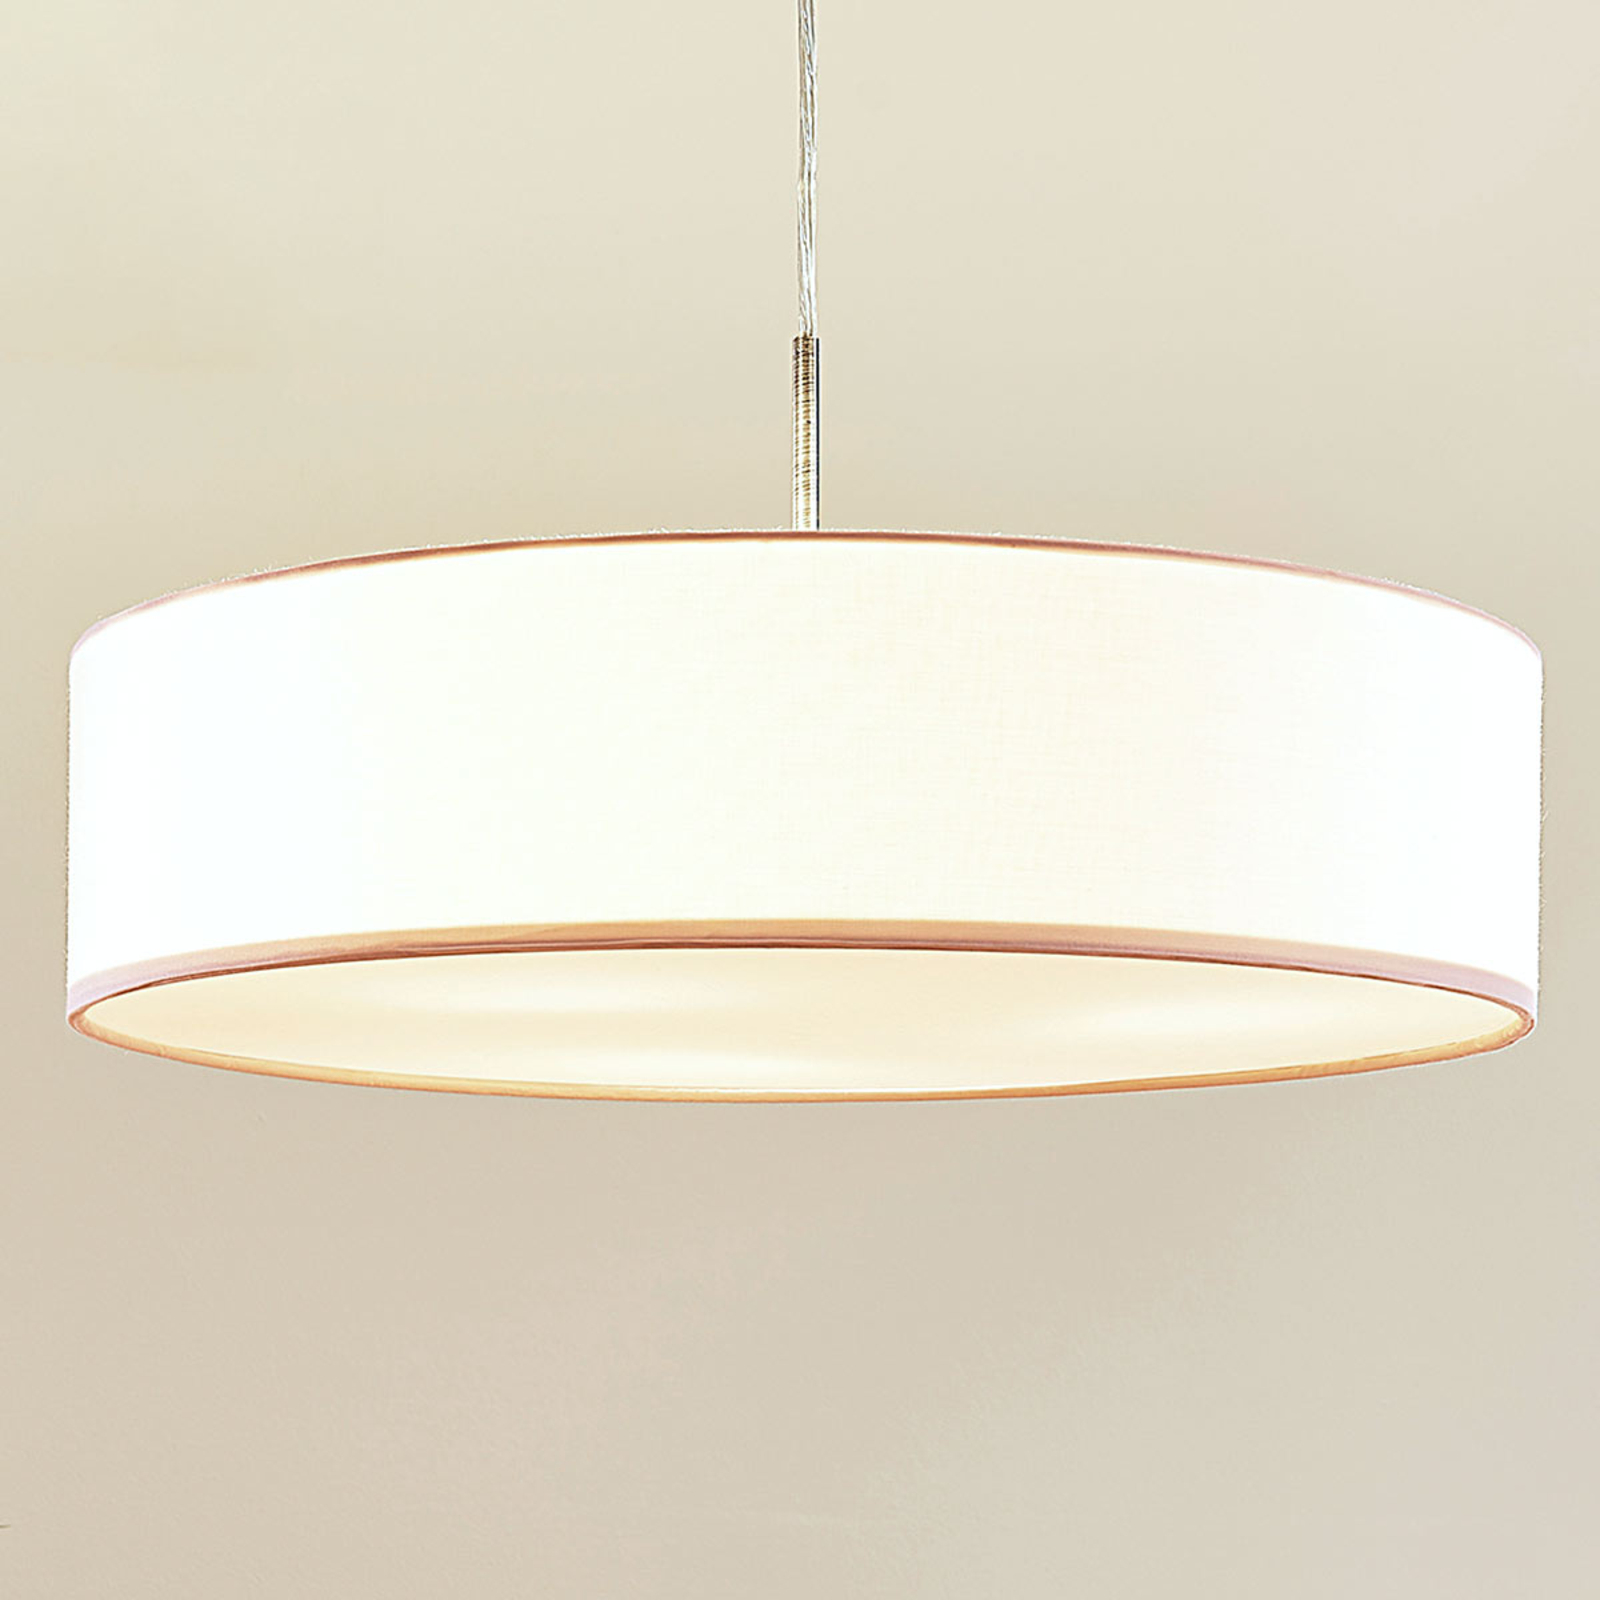 Sebatin pendant light for E27, 50 cm, white